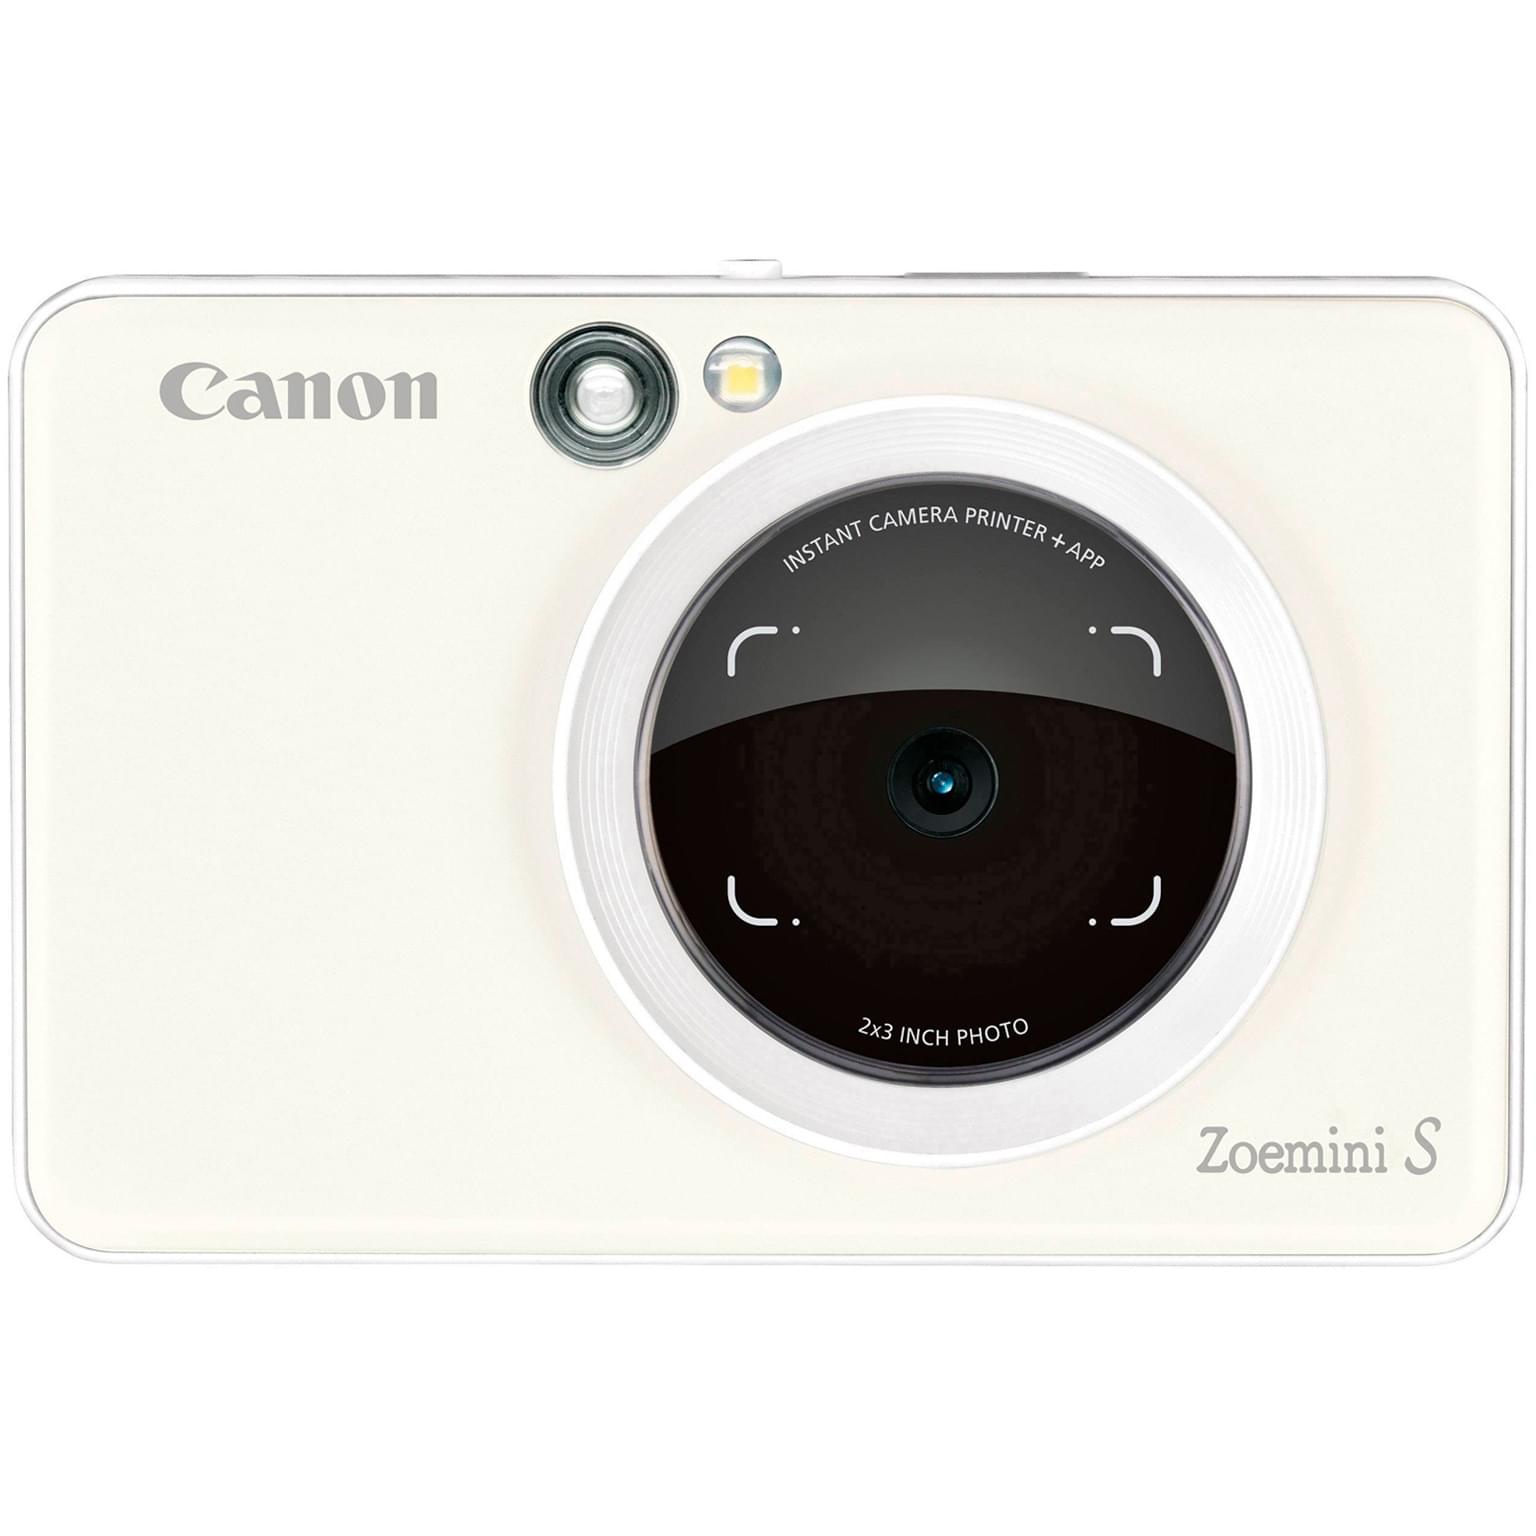 Идеи для творчества с устройствами Canon Zoemini - Canon Kazakhstan